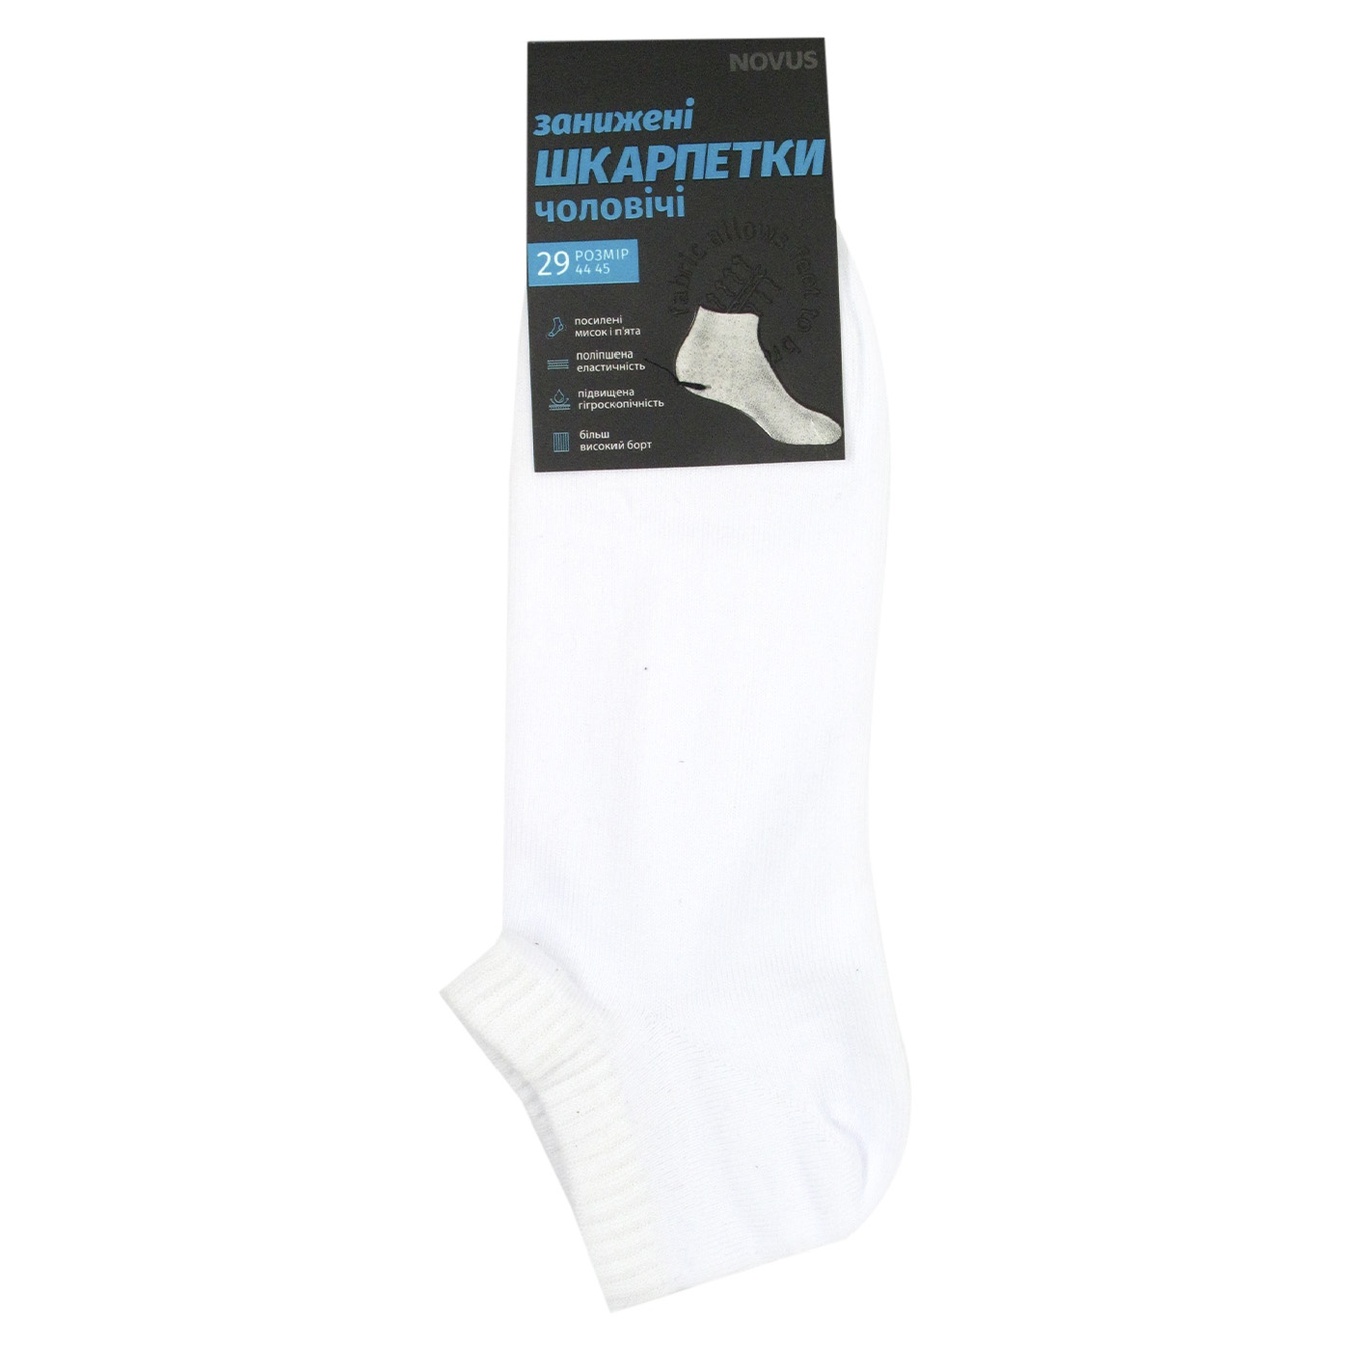 Men's socks NOVUS demi-season understated size 29 white